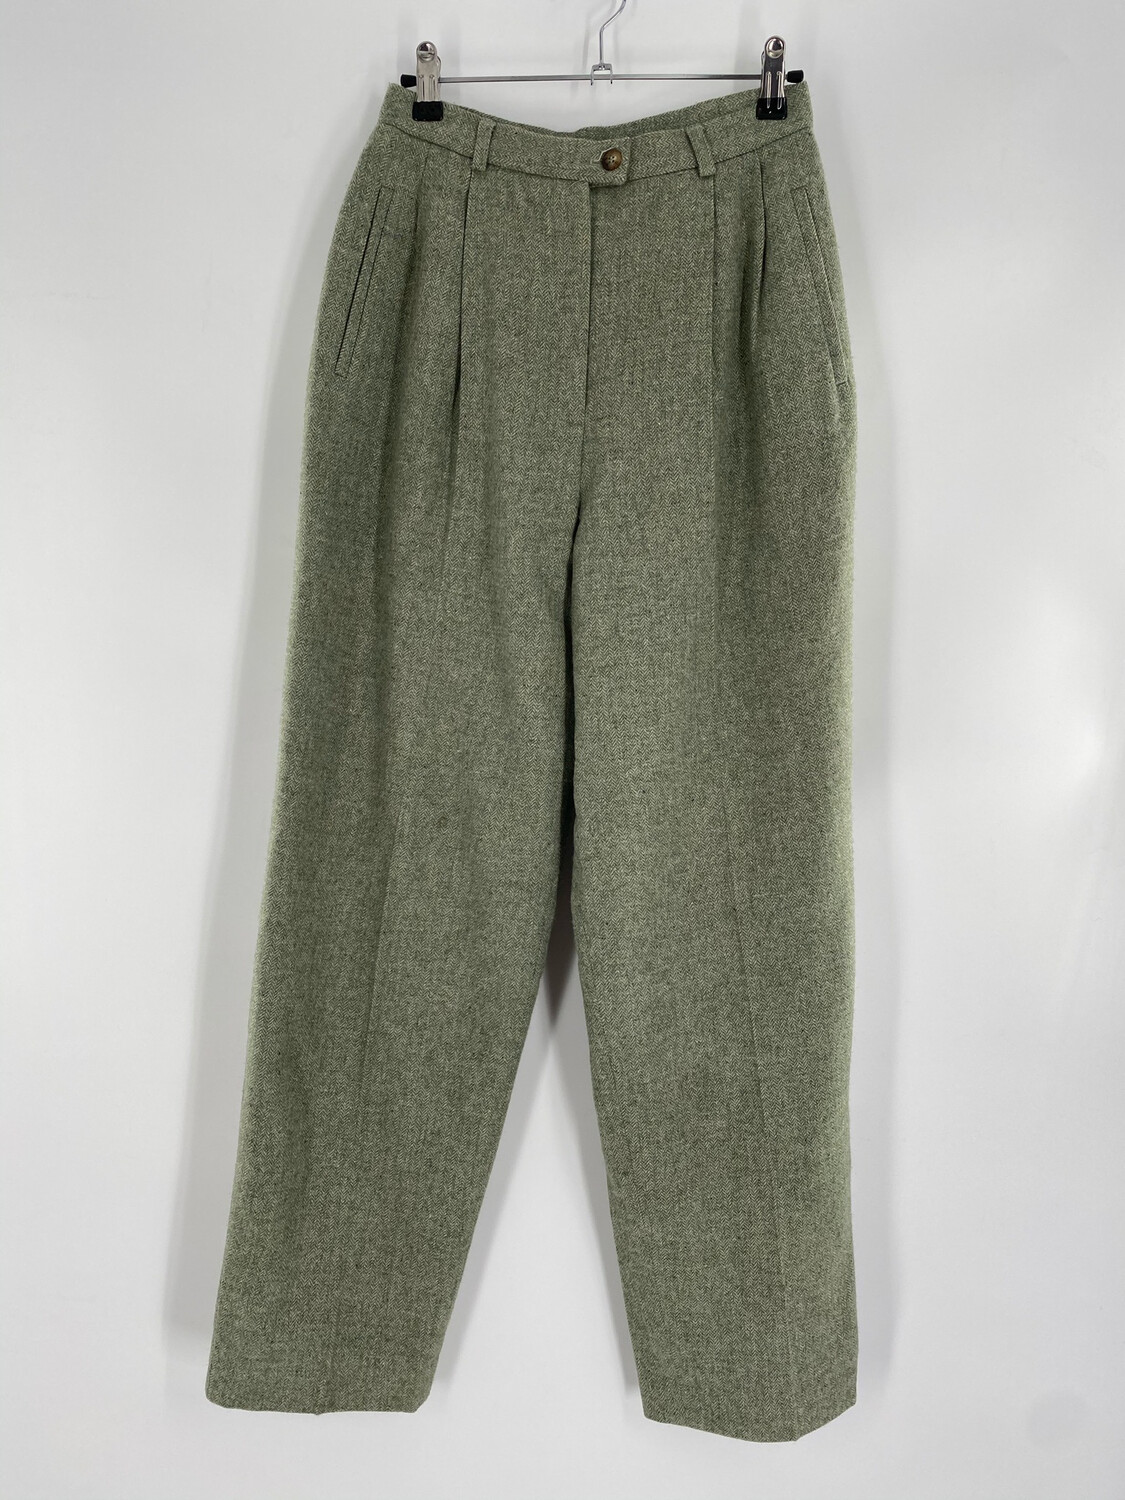 Evan Picone Vintage Wool Pants Size S